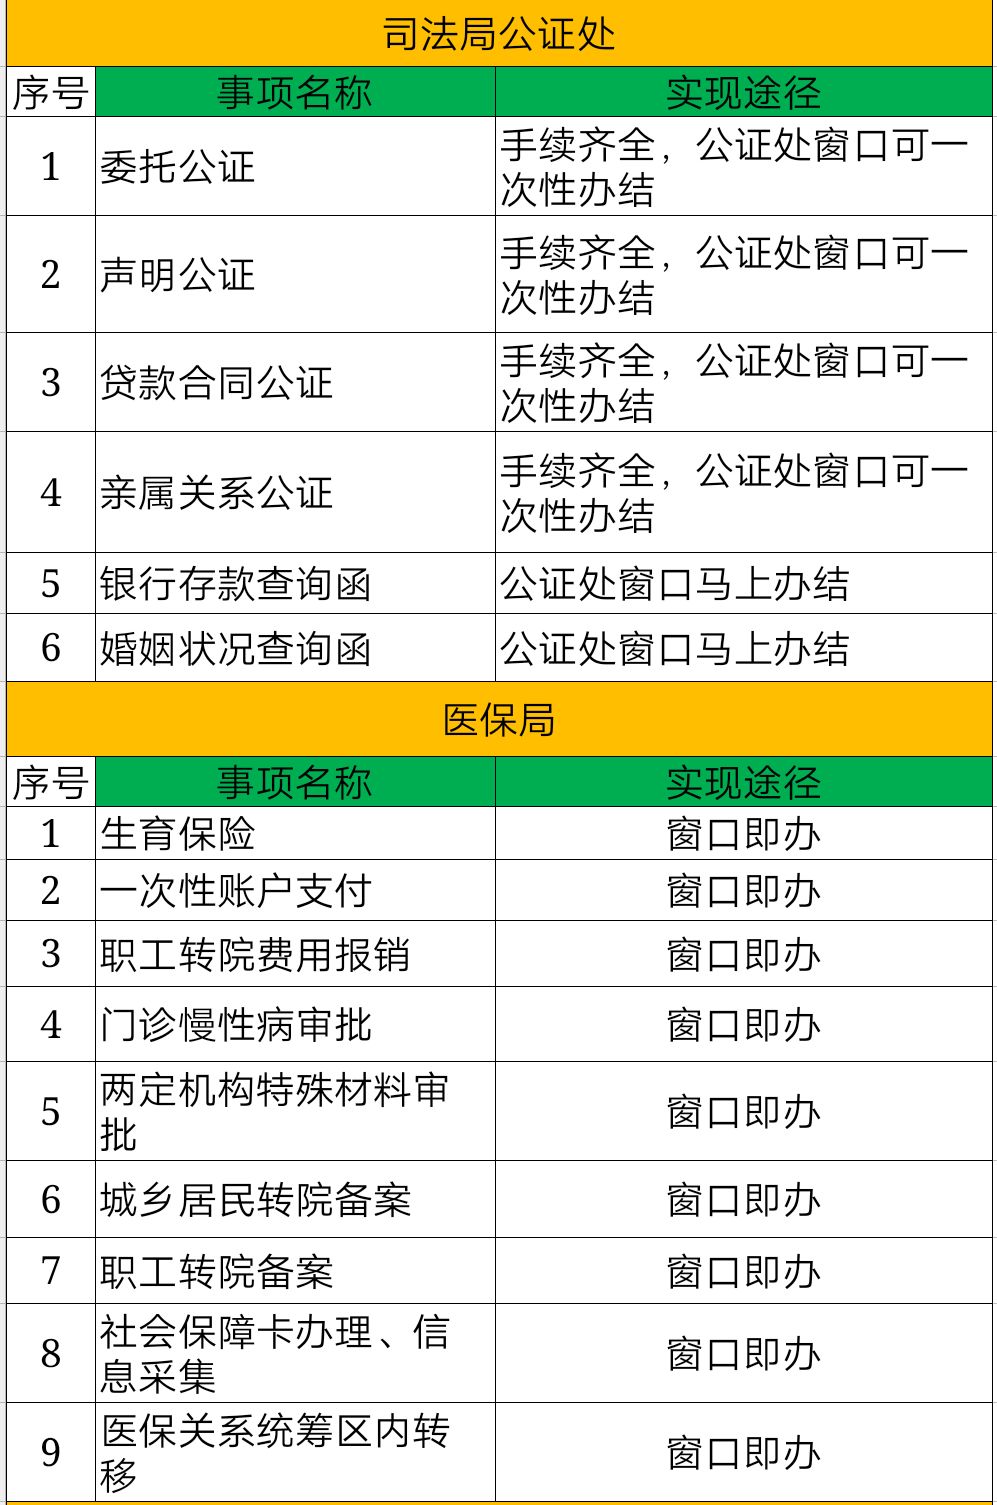 突泉县人口_突泉县贫困地域差异比较研究 以三个行政村为例